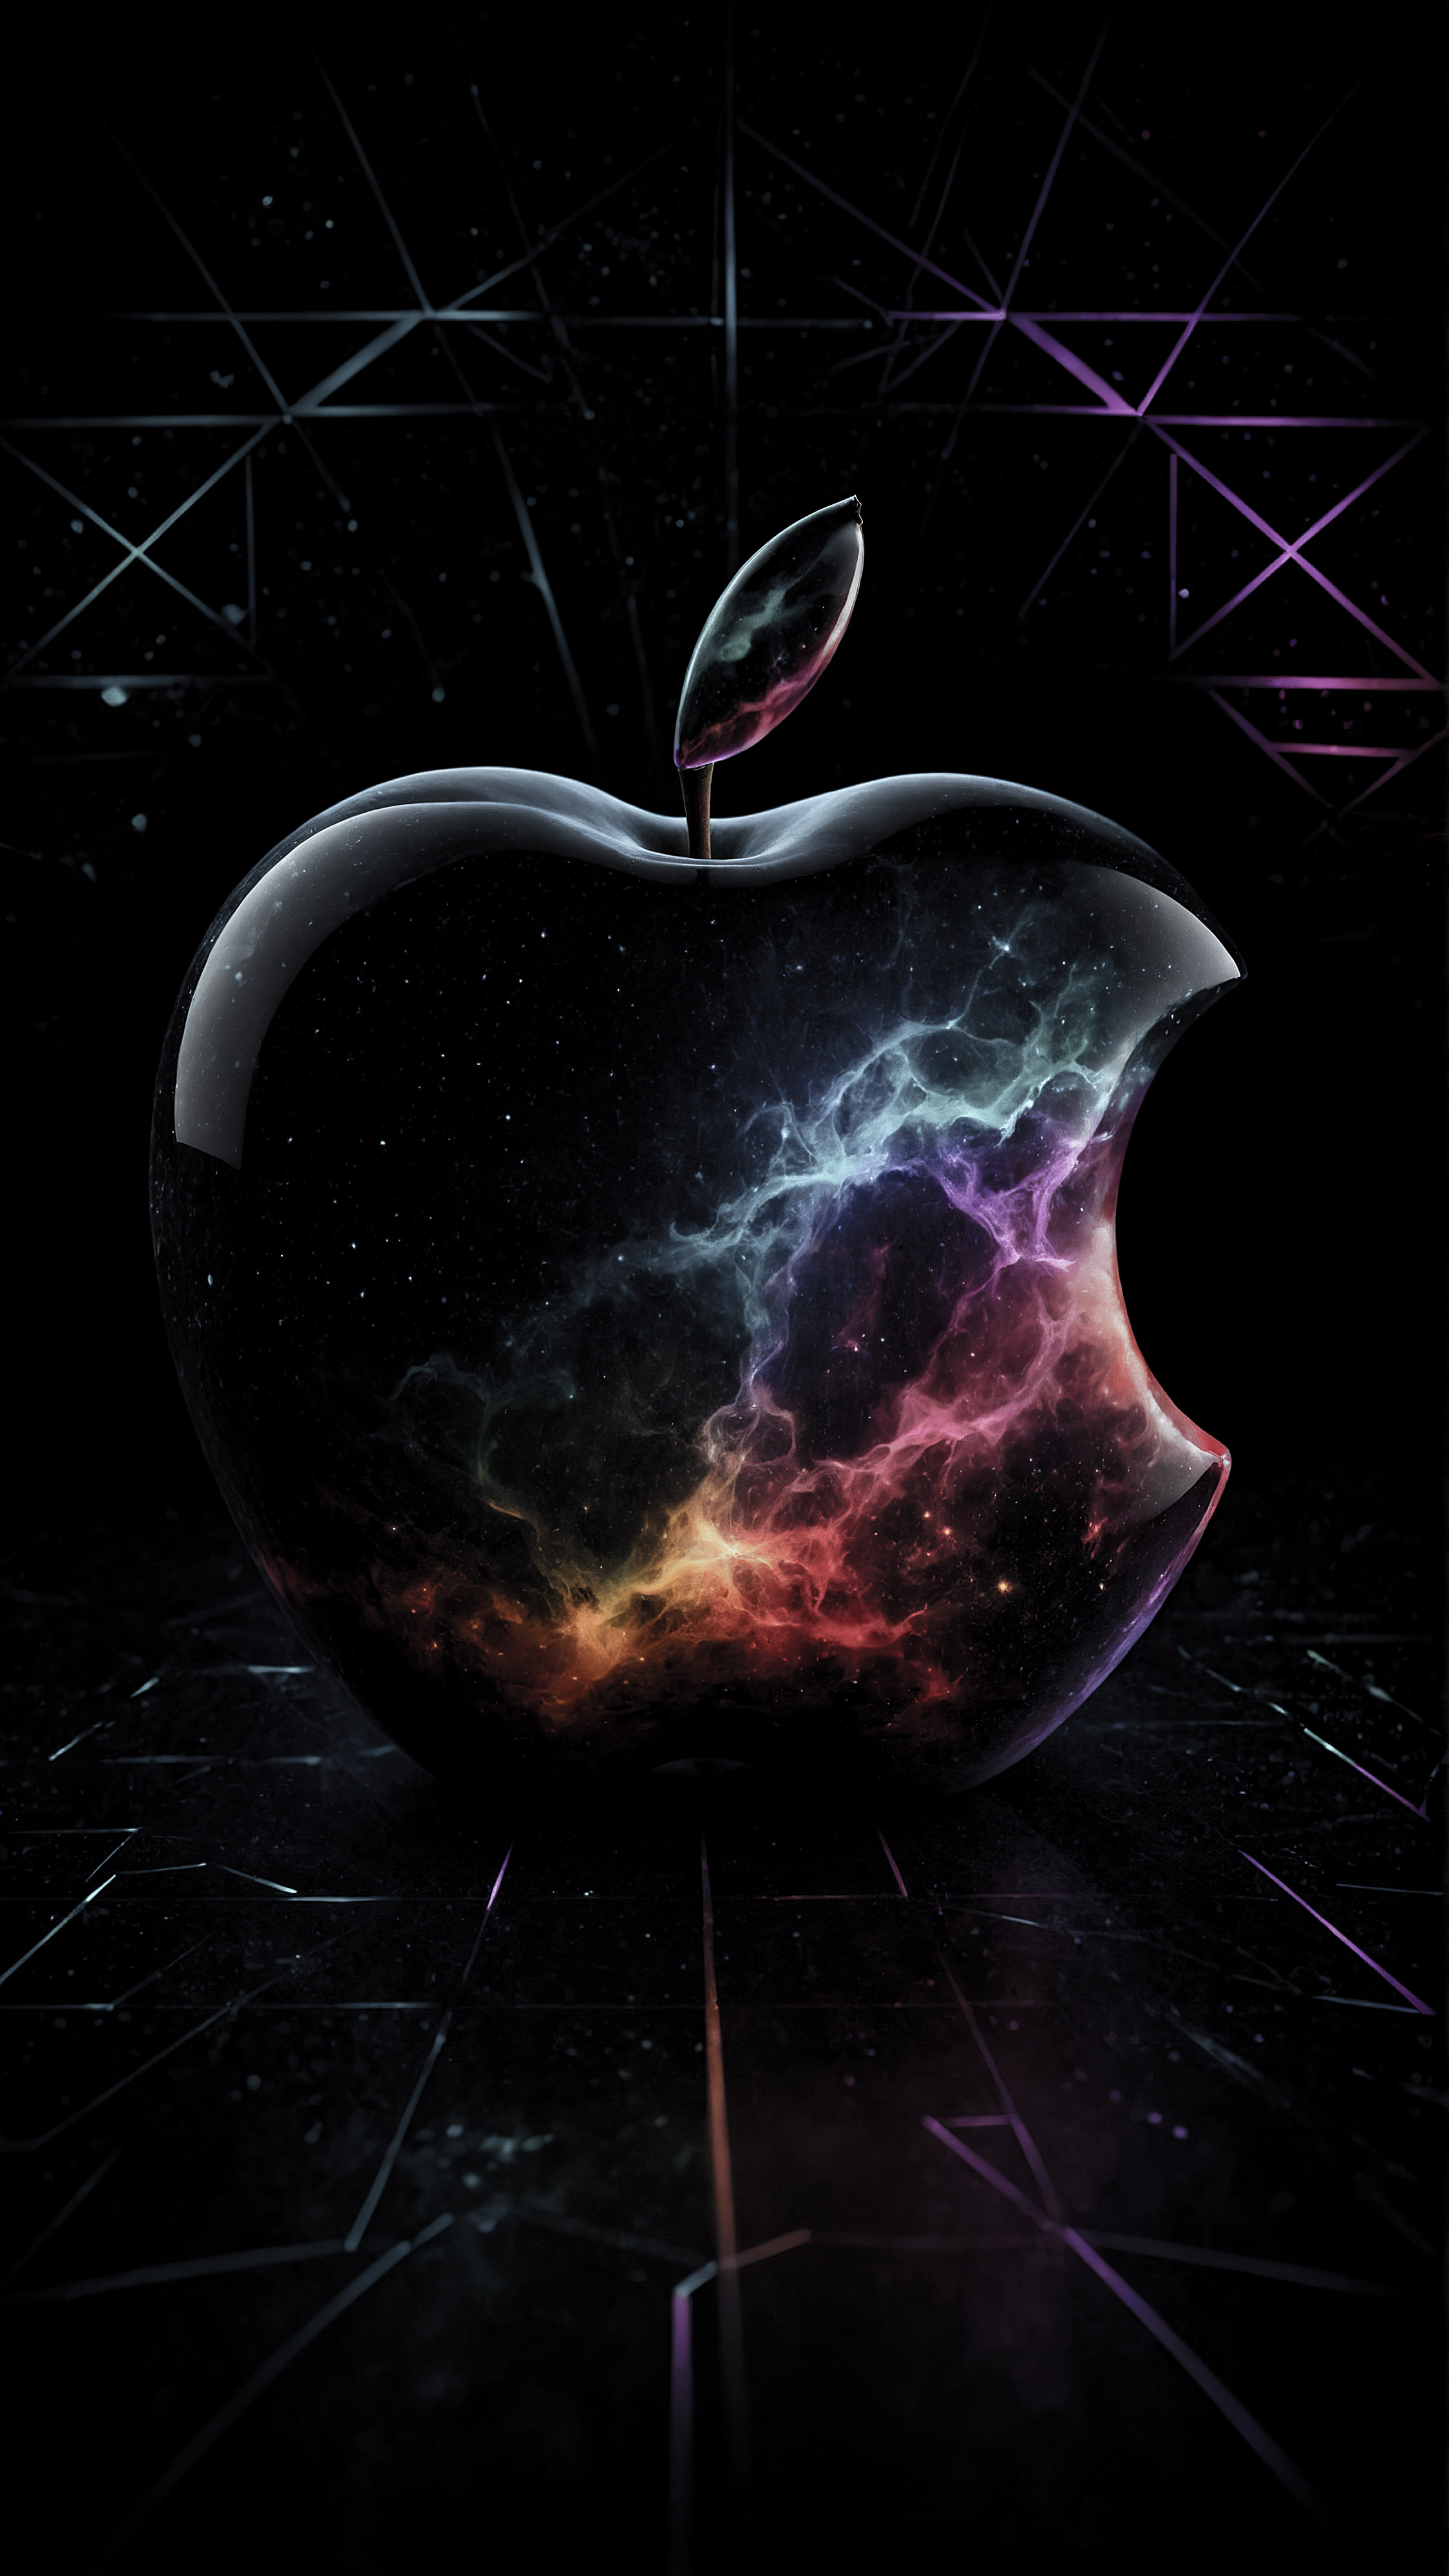 Transformez l'apparence de votre appareil avec notre 4K fond d'écran noir pour iPhone, présentant un logo Apple stylisé et coloré avec un motif cosmique sur un fond géométrique et sombre. 